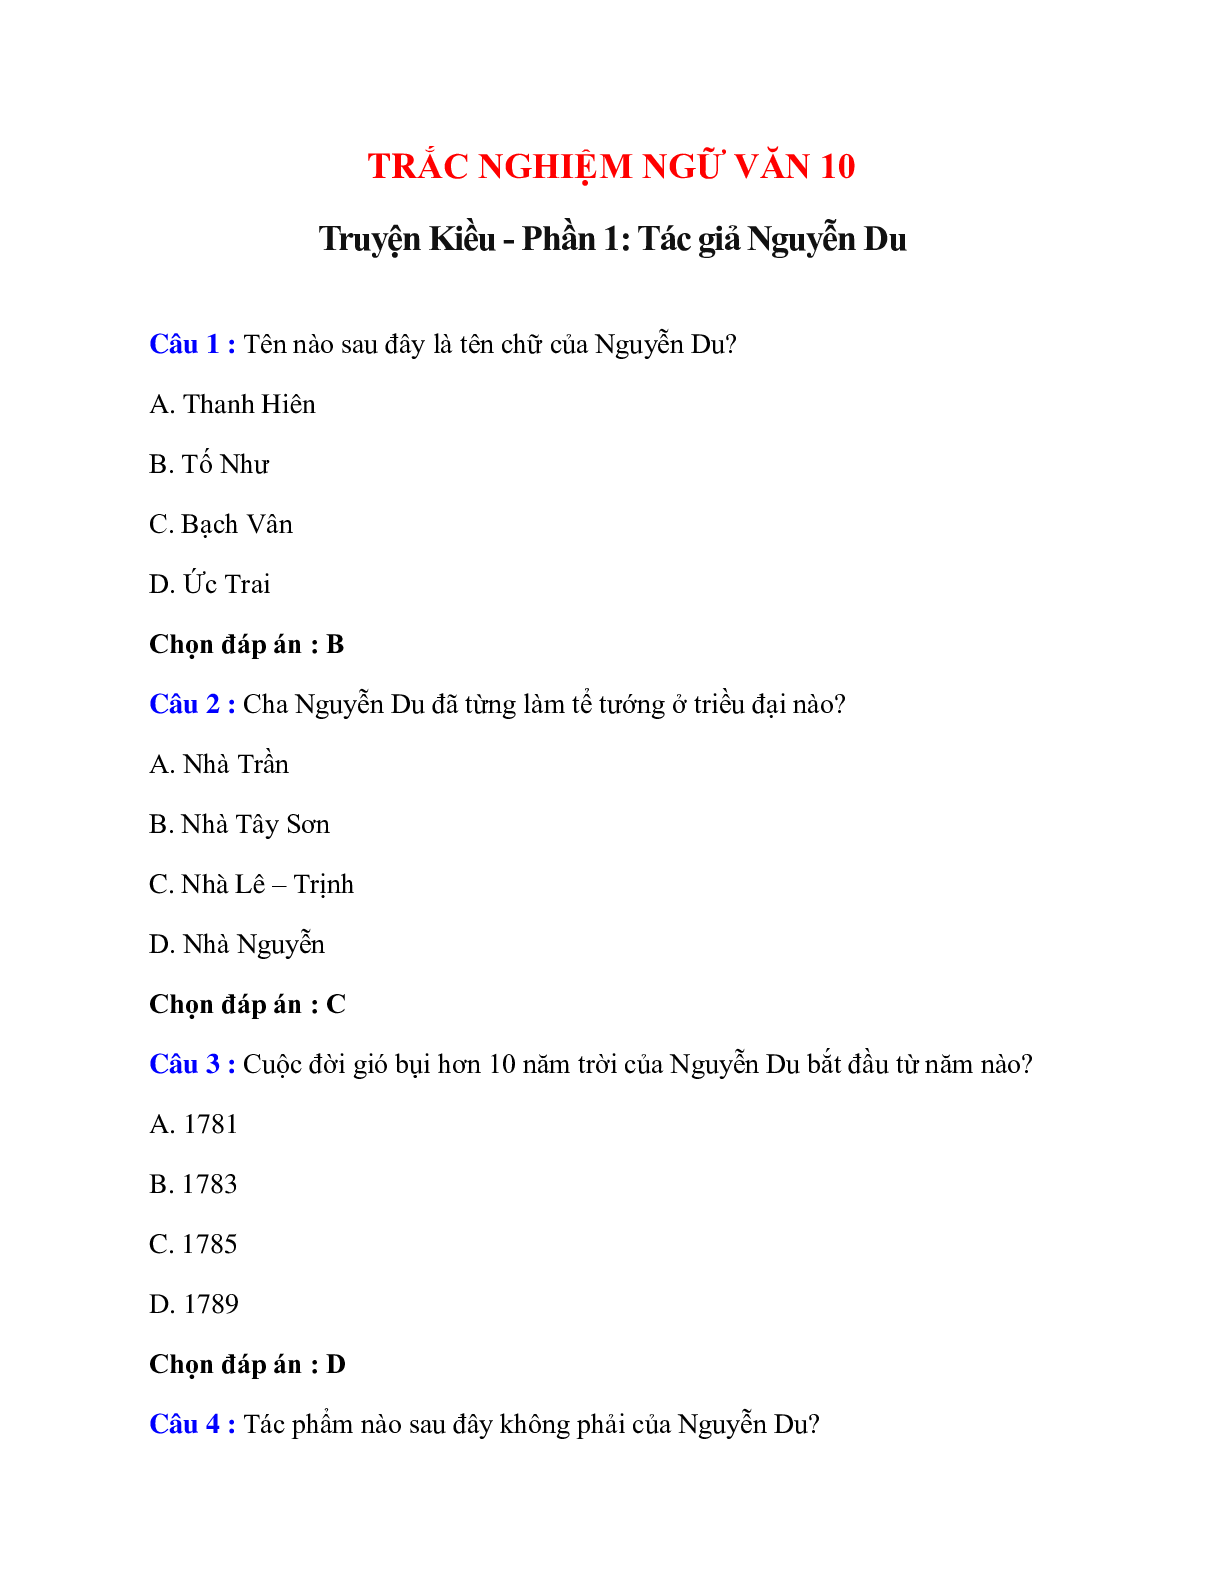 Trắc nghiệm Truyện Kiều - Phần 1: Tác giả Nguyễn Du có đáp án – Ngữ văn lớp 10 (trang 1)